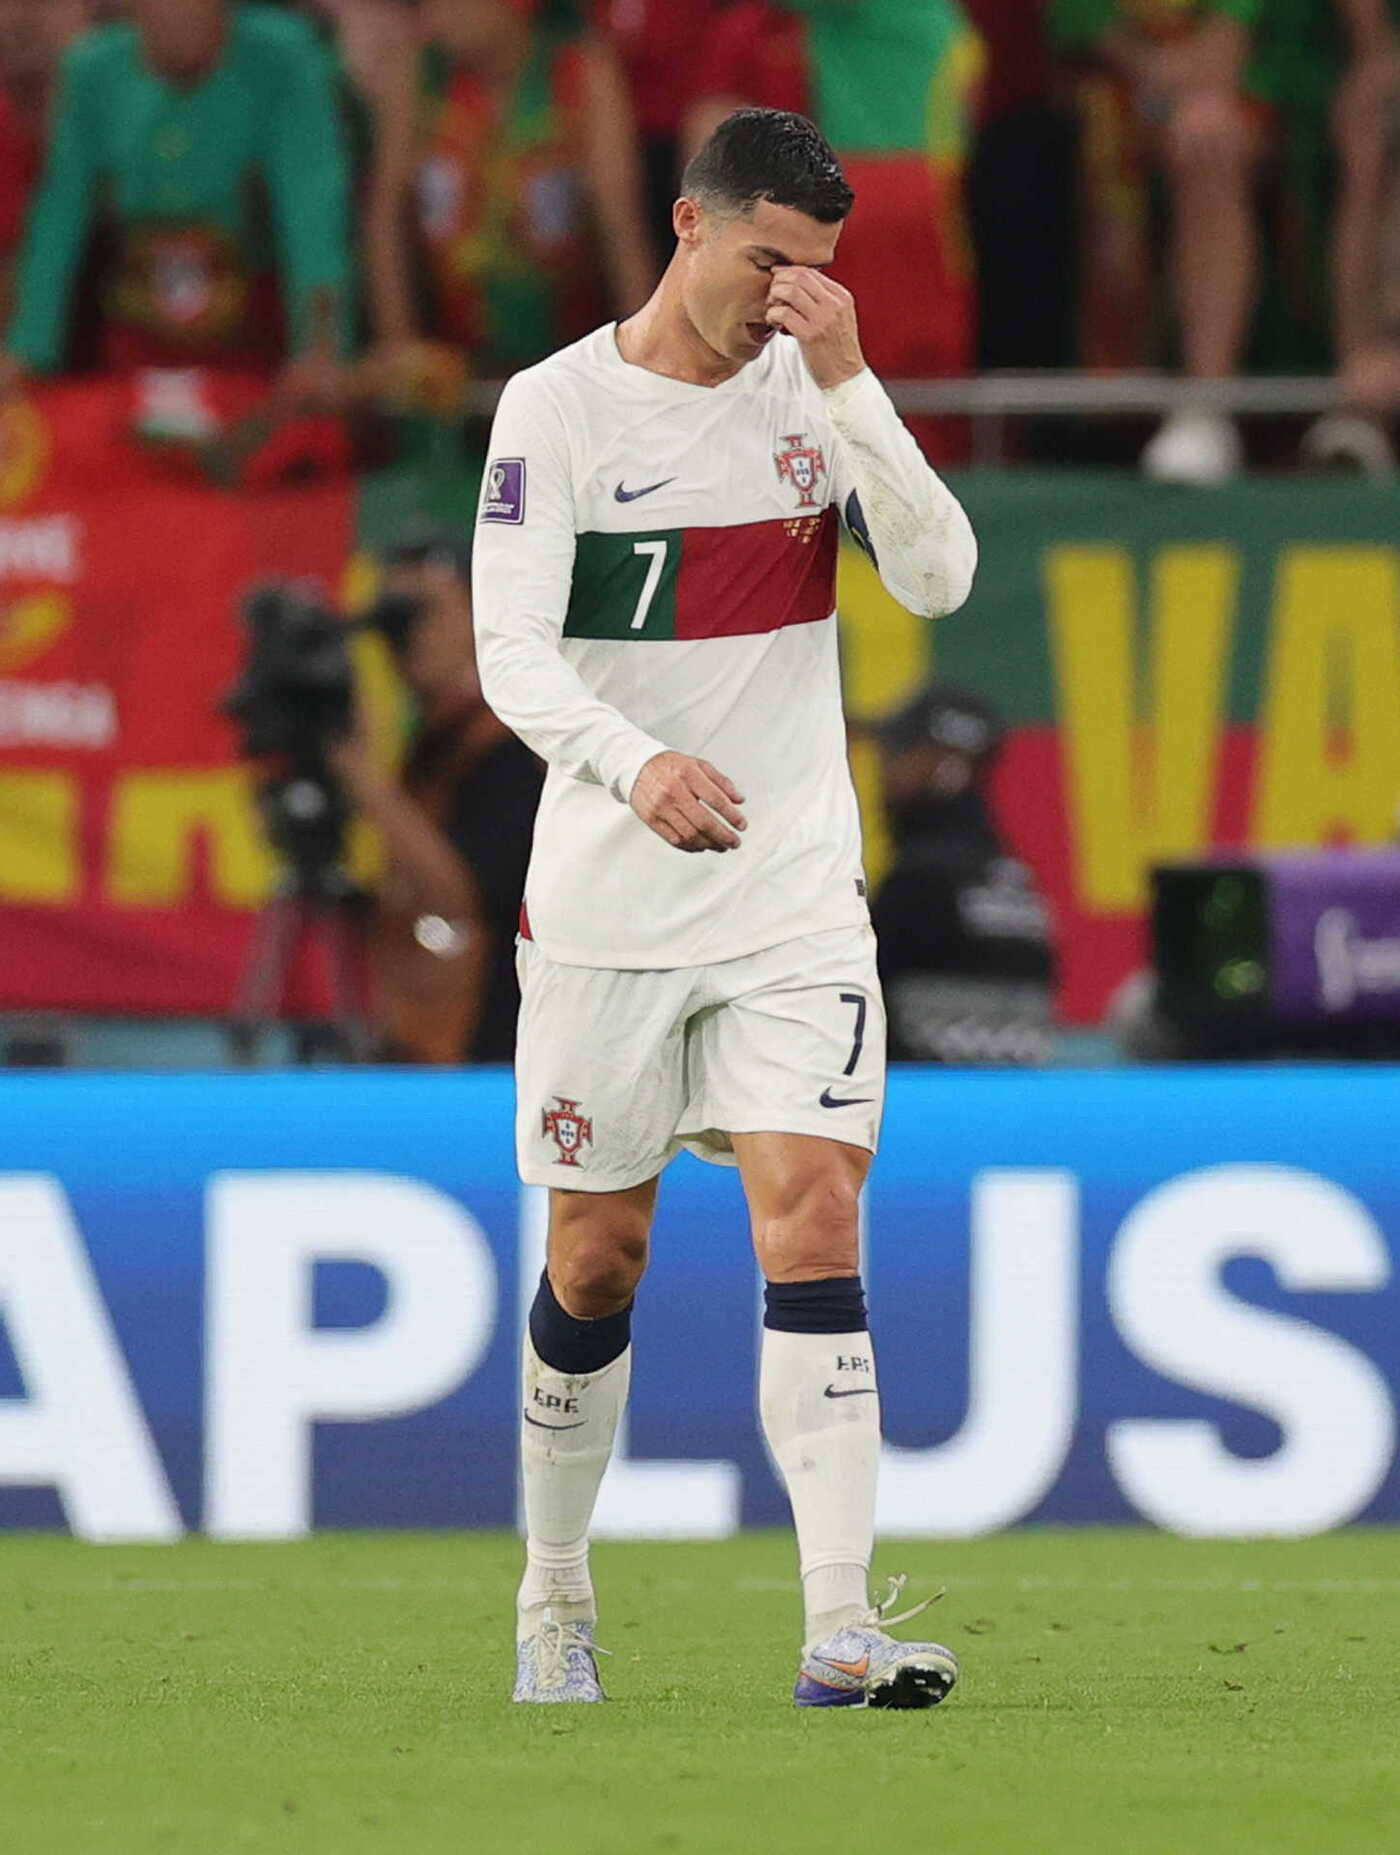 ĐT Bồ Đào Nha bị loại - Đừng bỏ lỡ hình ảnh của ĐT Bồ Đào Nha khi họ bị loại khỏi giải đấu quan trọng. Mặc dù thất bại, nhưng đội tuyển này vẫn là một trong những đội bóng đá hiệu quả nhất thế giới.